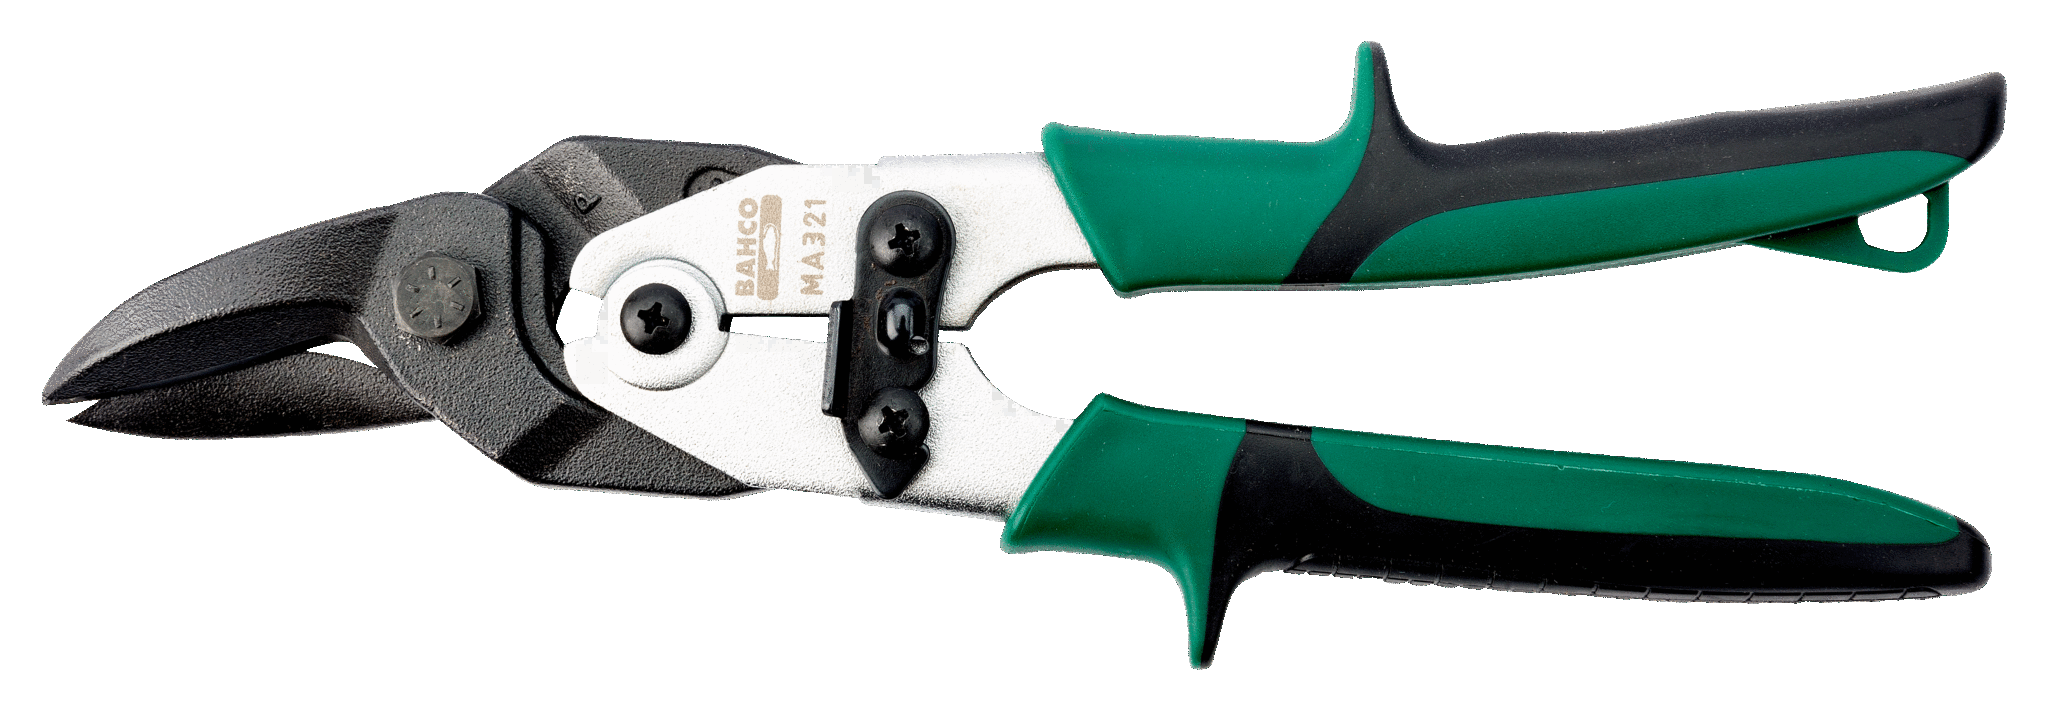 картинка Ножницы с многоступенчатым рычагом, правый рез BAHCO MA321 от магазина "Элит-инструмент"